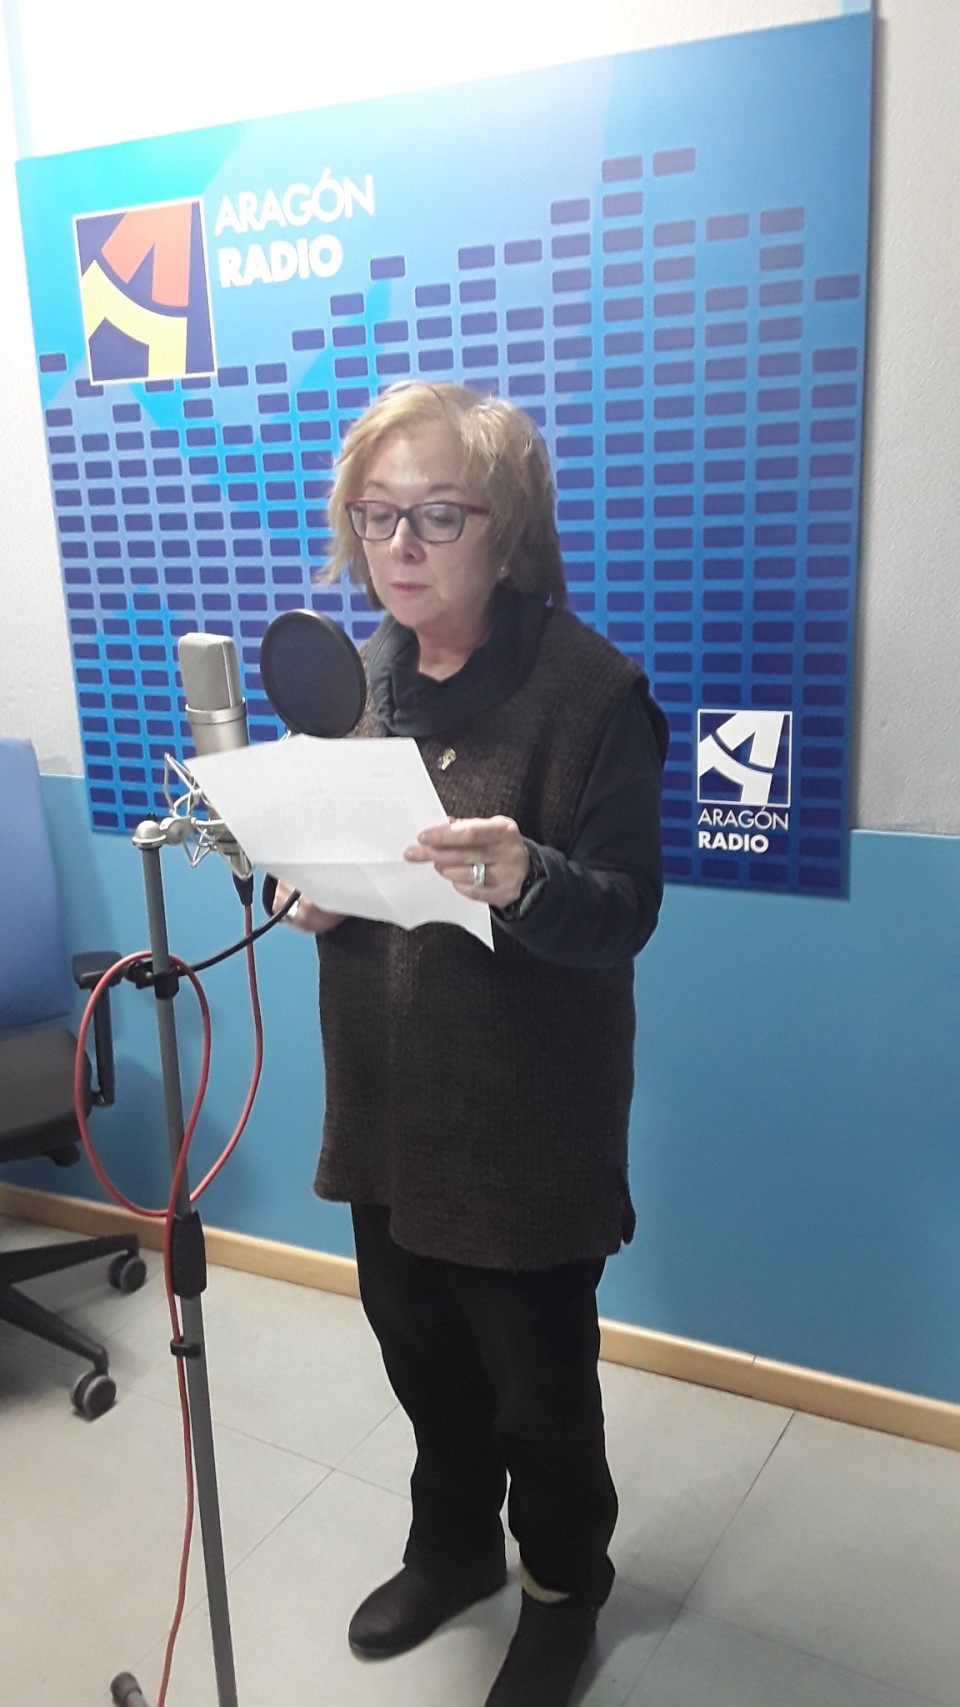 Imagen Lectura de Luisa Miñana en uno de los estudios de Aragón Radio [plano 1]